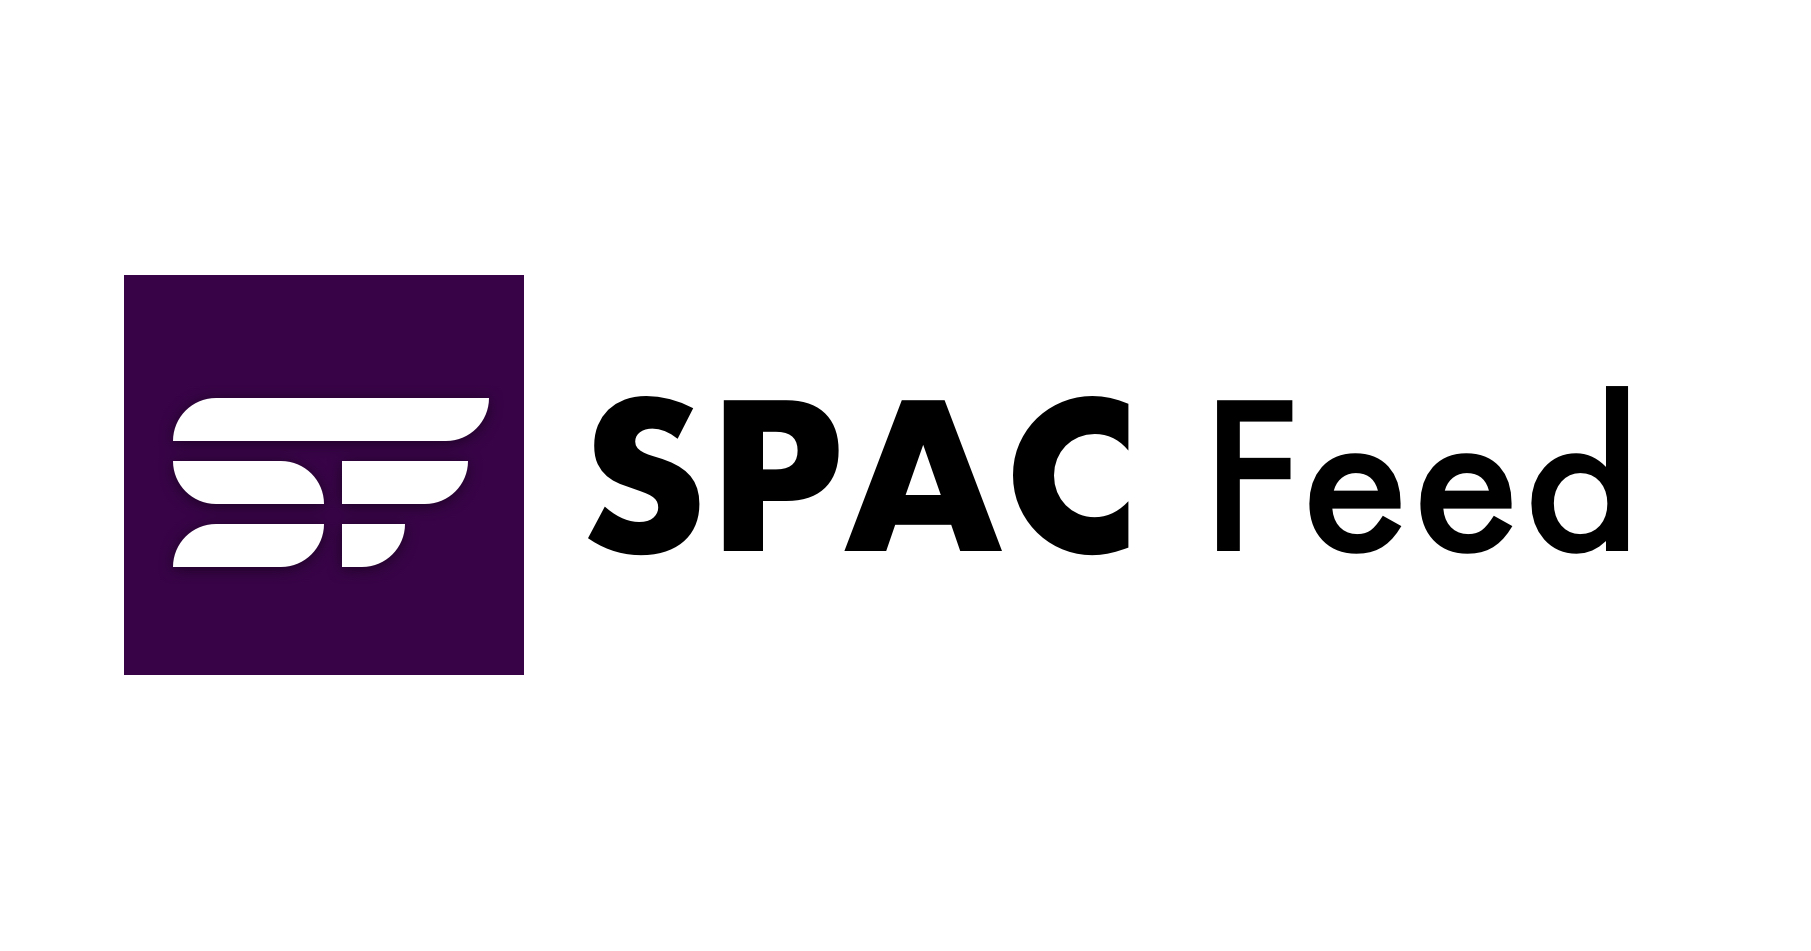 سافٹ ویئر کی خرابی بہت زیادہ ہے، Nuro مزید کٹوتیاں کرتا ہے اور VinFast نے SPAC کی راہ لی - TechCrunch | SPAC فیڈ